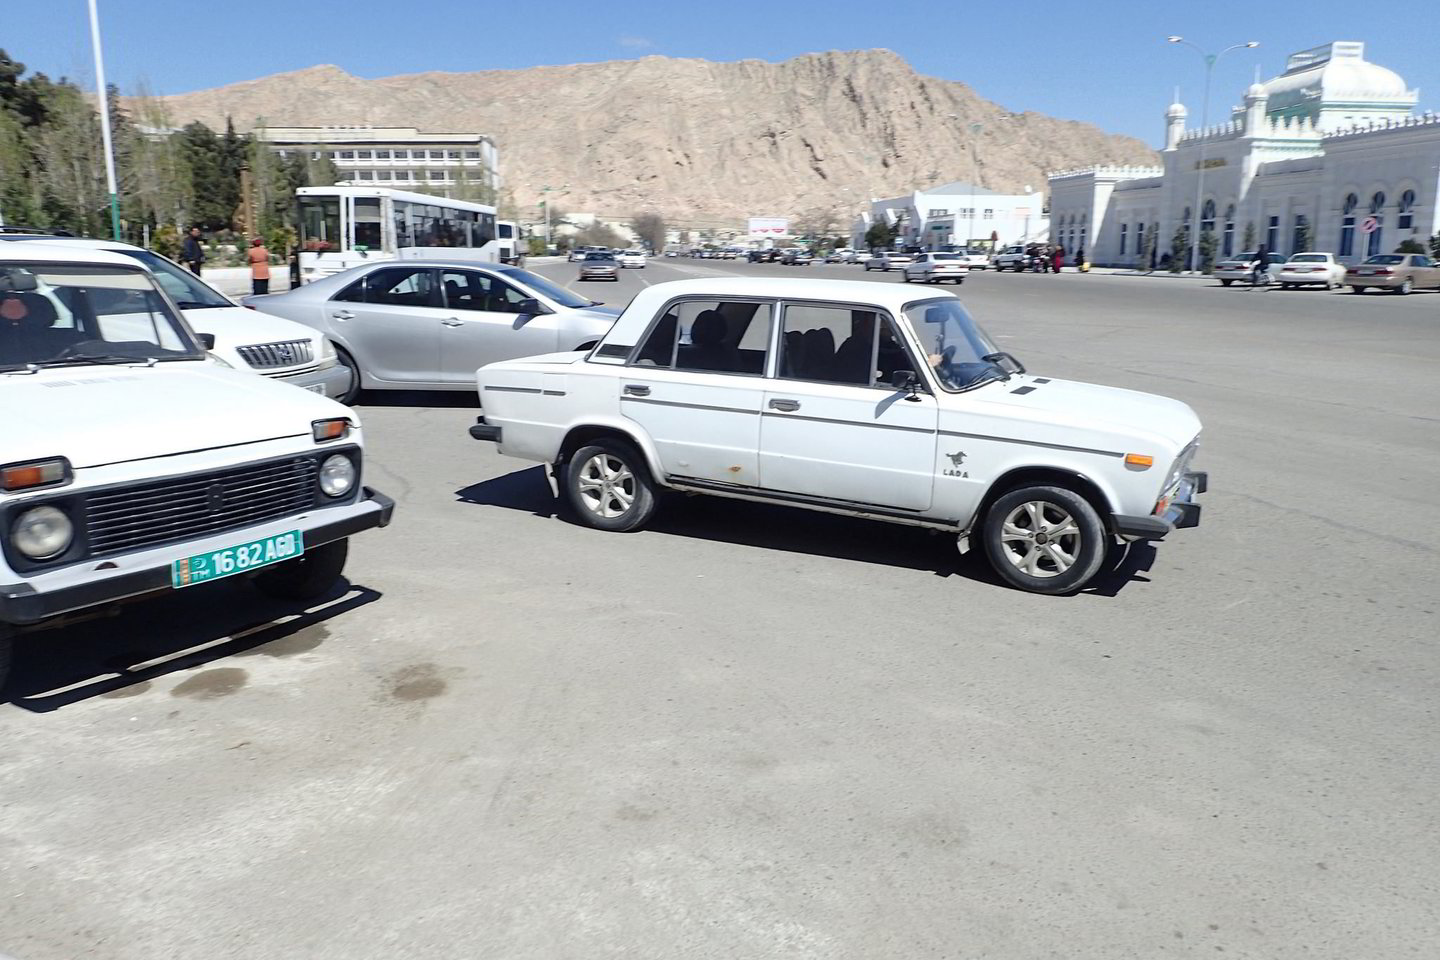 Turkmėnijos prezidentas nori, kad prieš sostinės Ašchabado šventę mieste liktų tik baltos spalvos automobiliai.<br>Laika lc/Flickr.com nuotr.